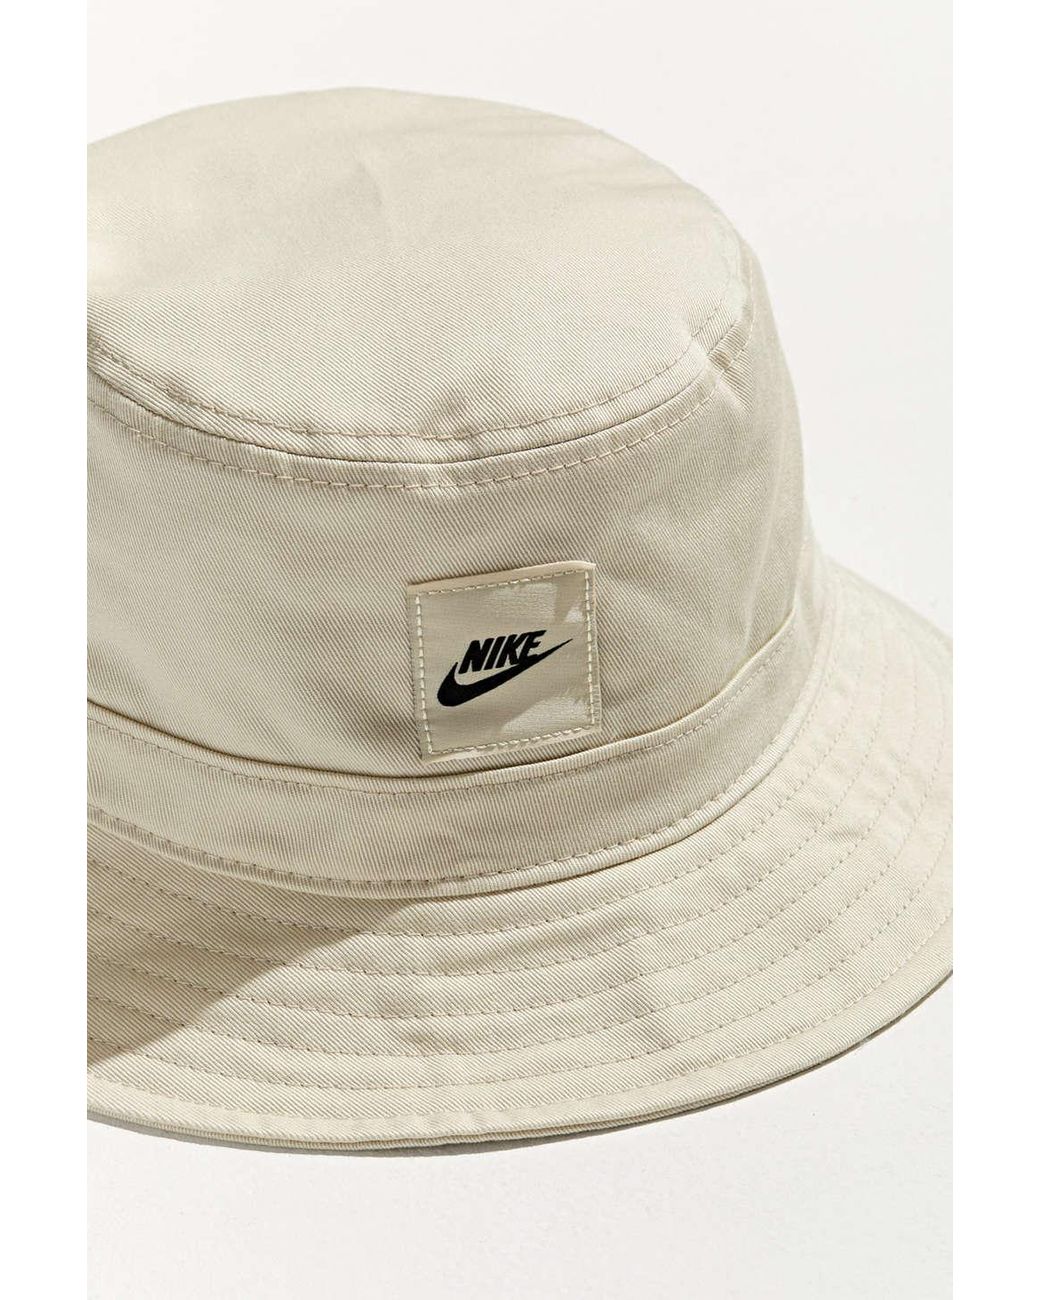 Sportswear | Men Nike Core Hat Natural Lyst in for Bucket